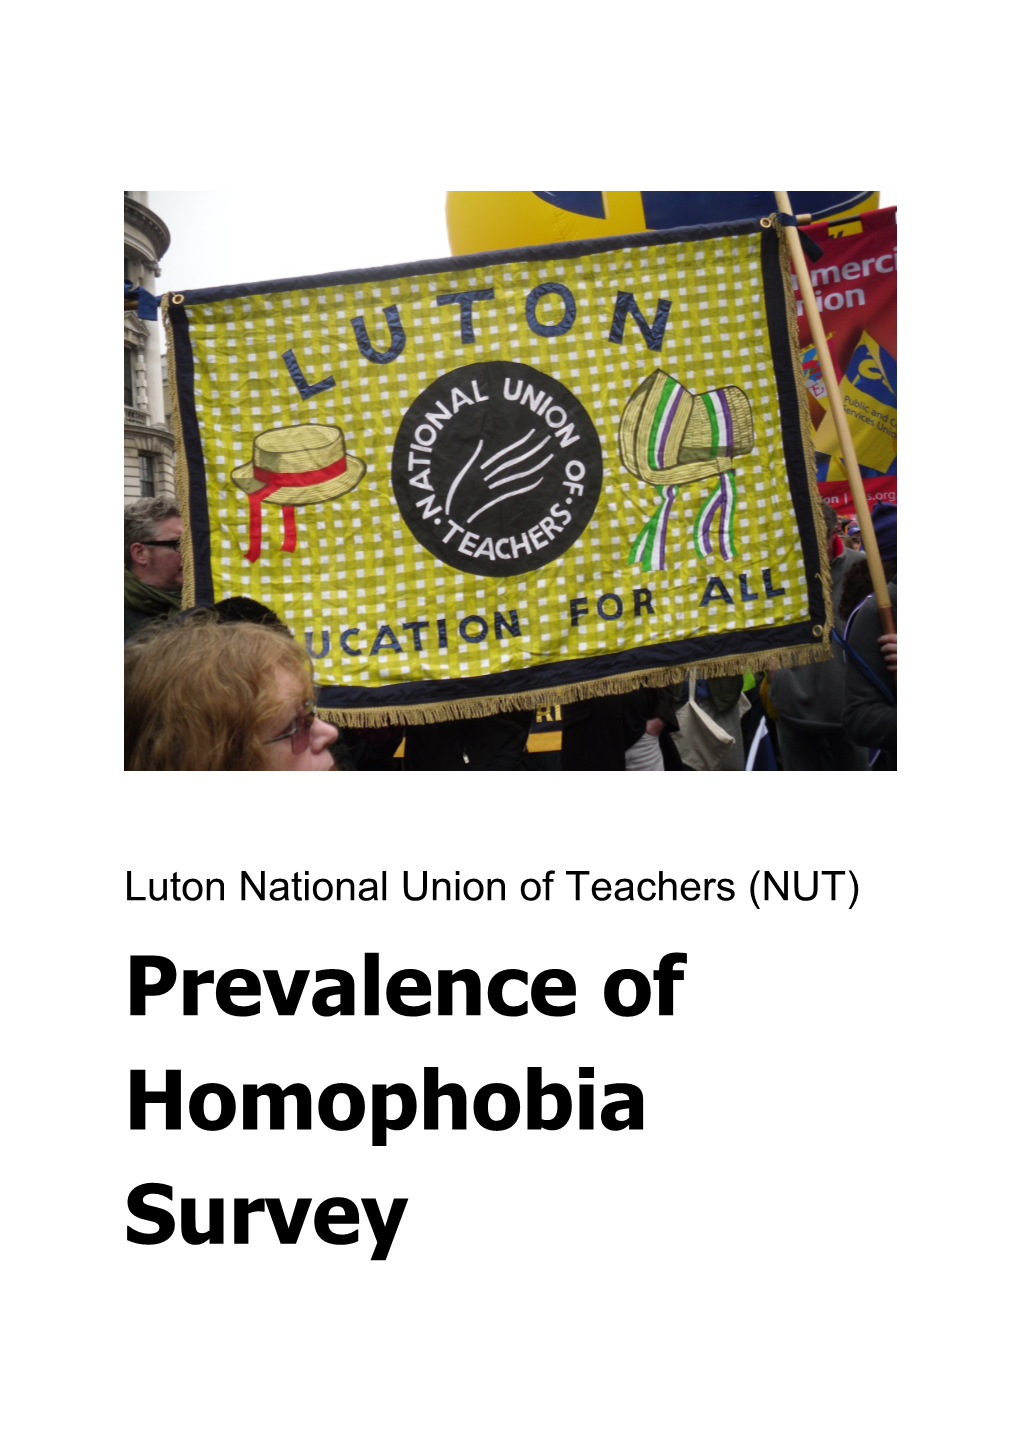 Luton NUT Prevalence of Homophobia Survey